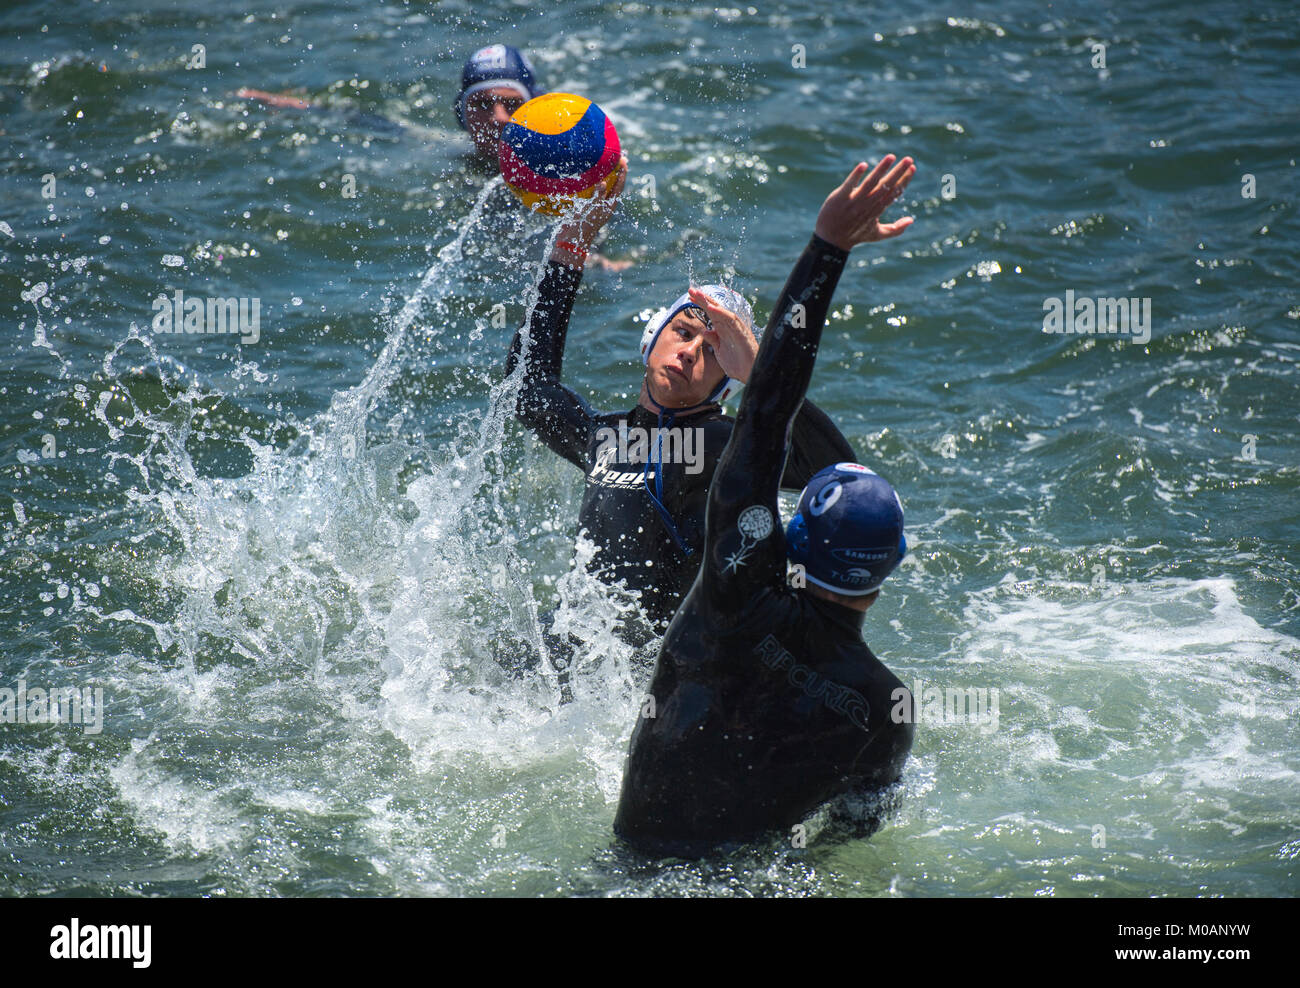 Aktion aus einem Wasser Polo Match in Kapstadt, Südafrika gespielt wird Stockfoto